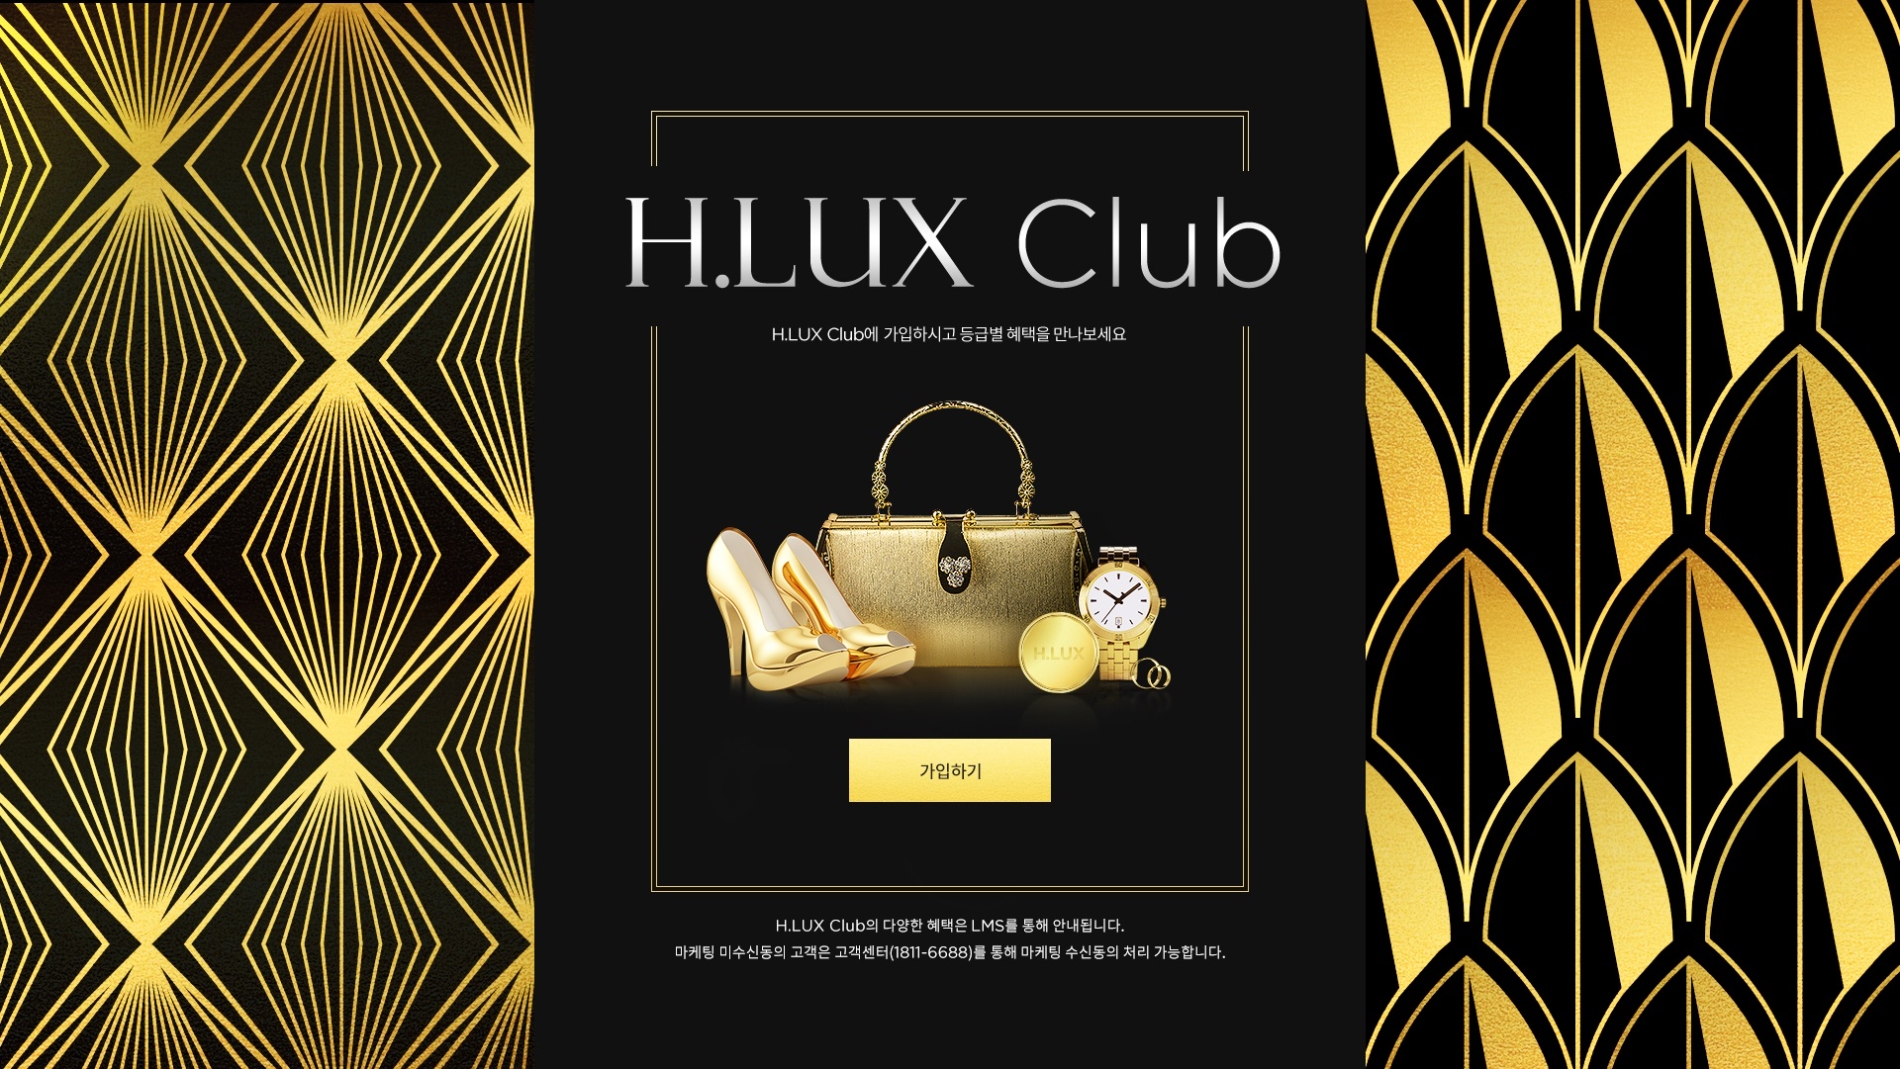 현대백화점면세점 'H.LUX Club'를 론칭했다. /사진제공=현대백화점면세점 